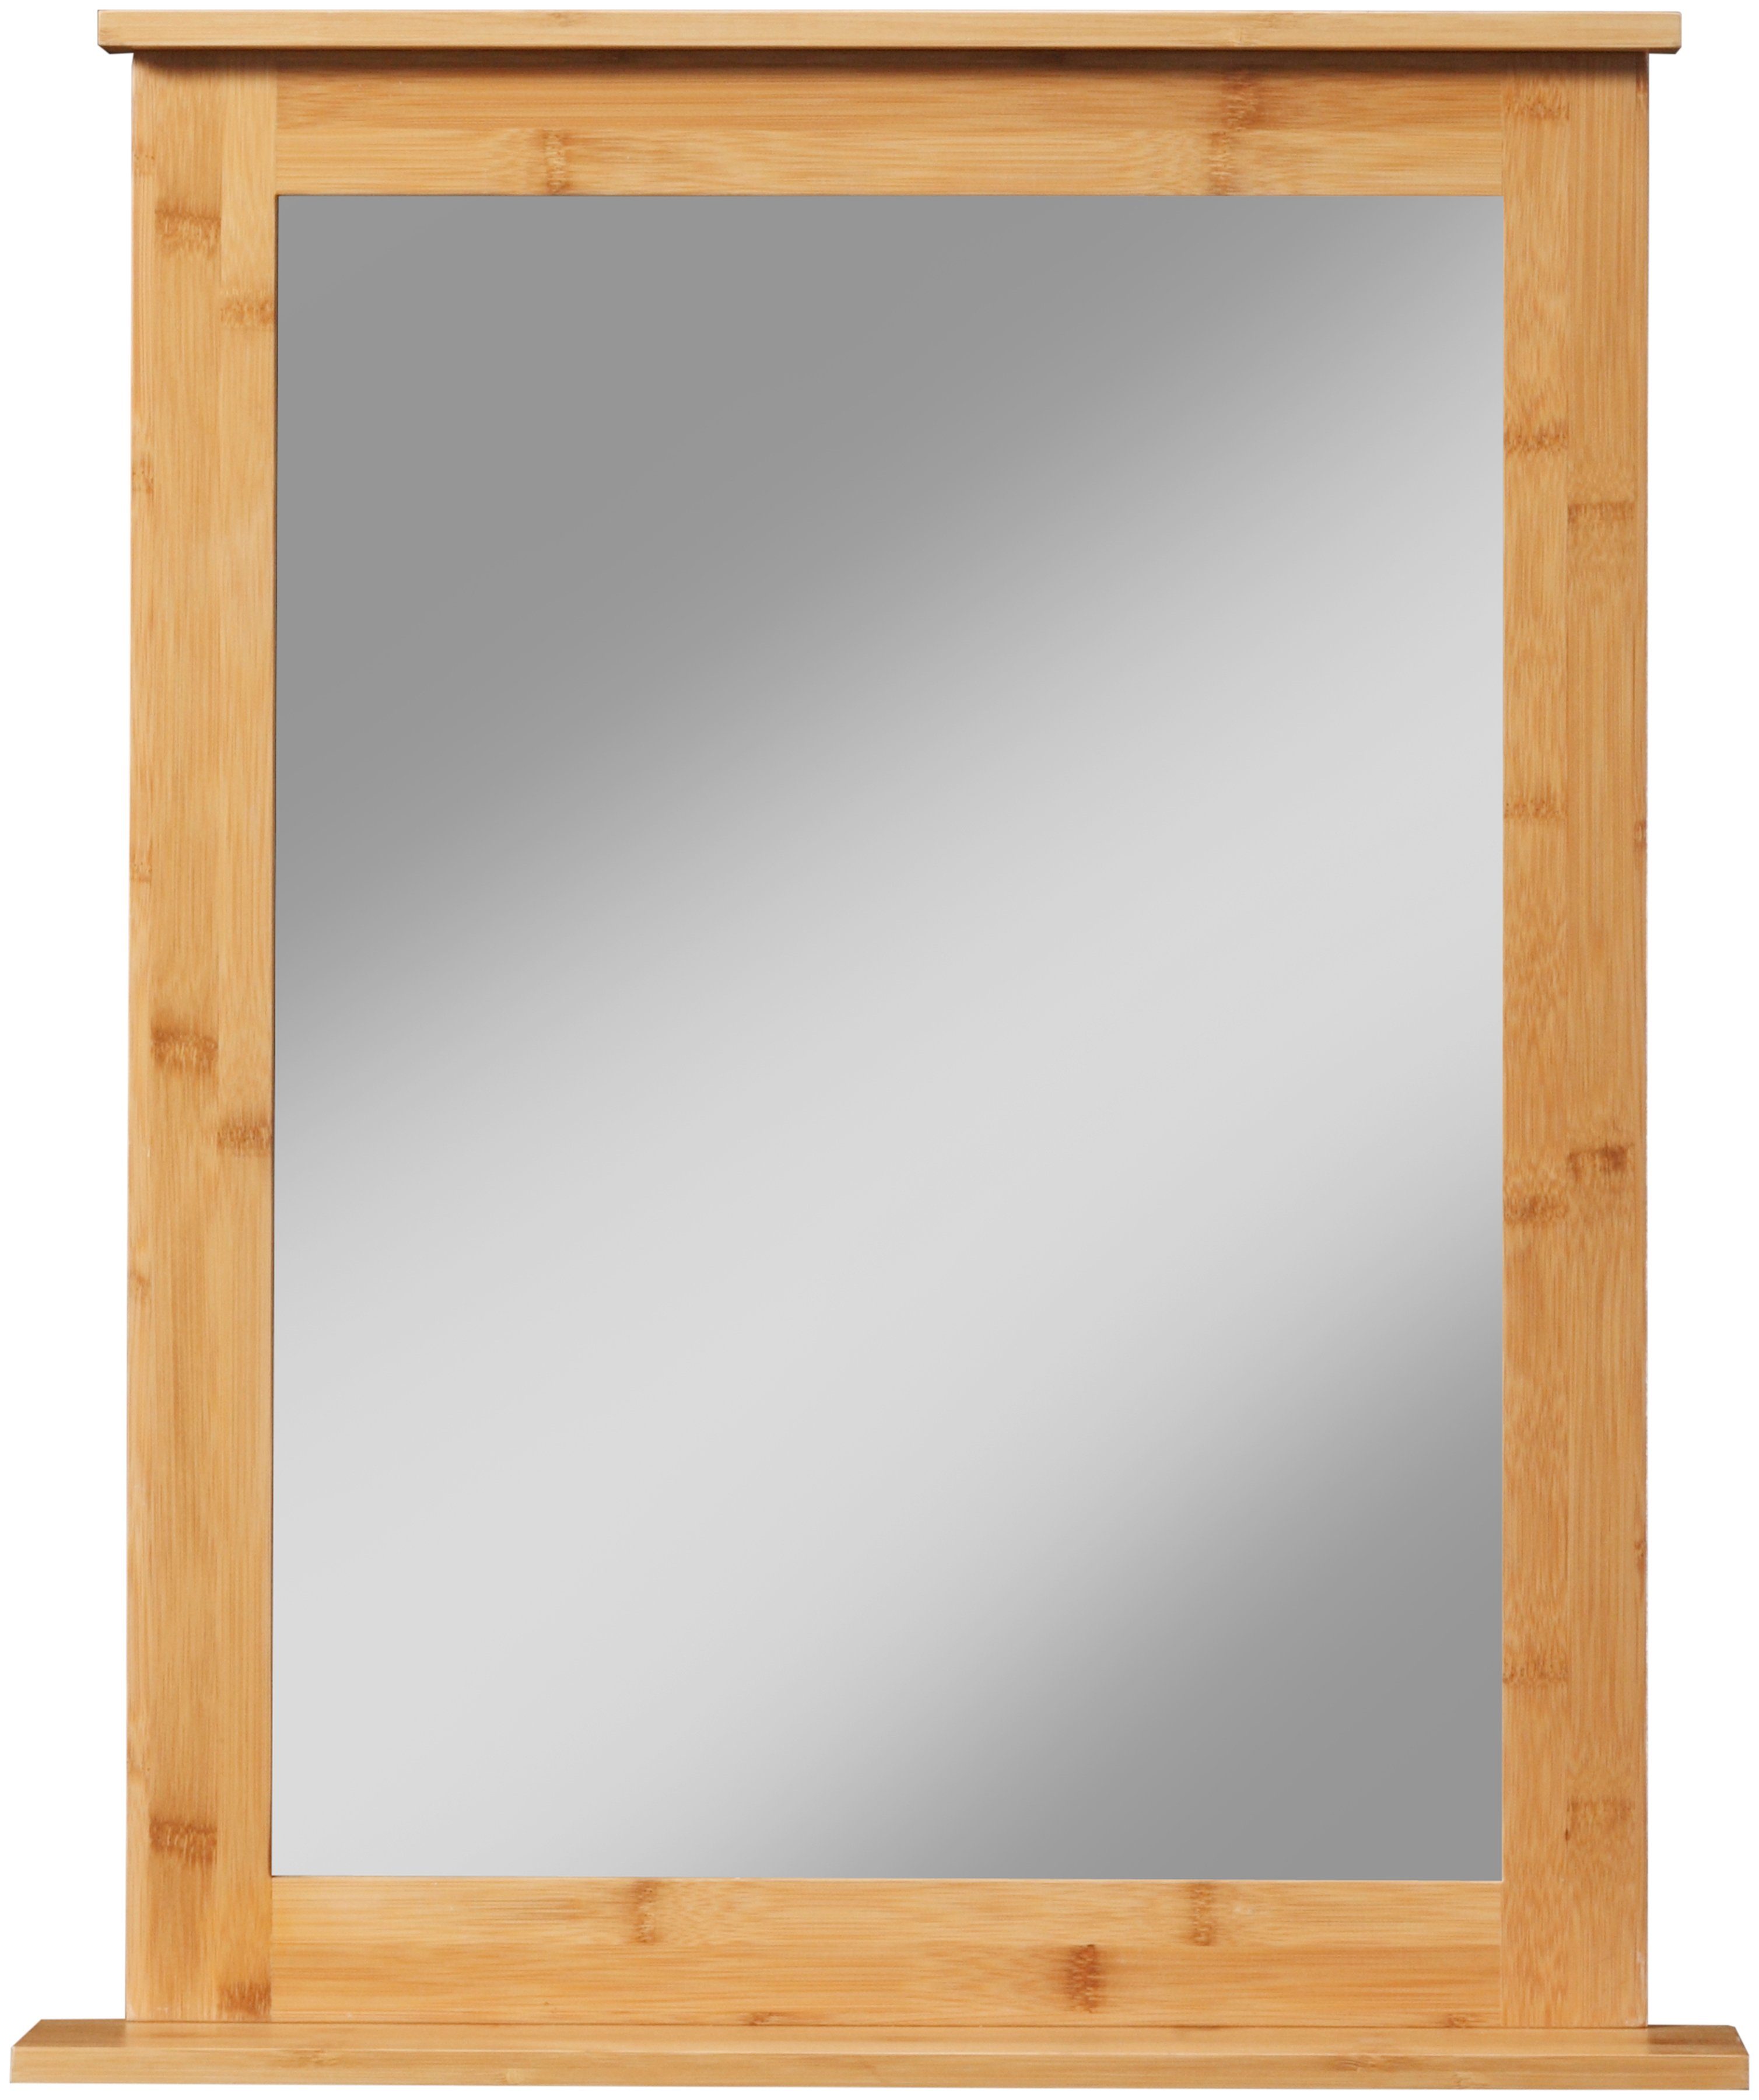 Badezimmerspiegel eckig Badspiegel Bambus welltime 58x70cm New, Bambus-Rahmen, mit